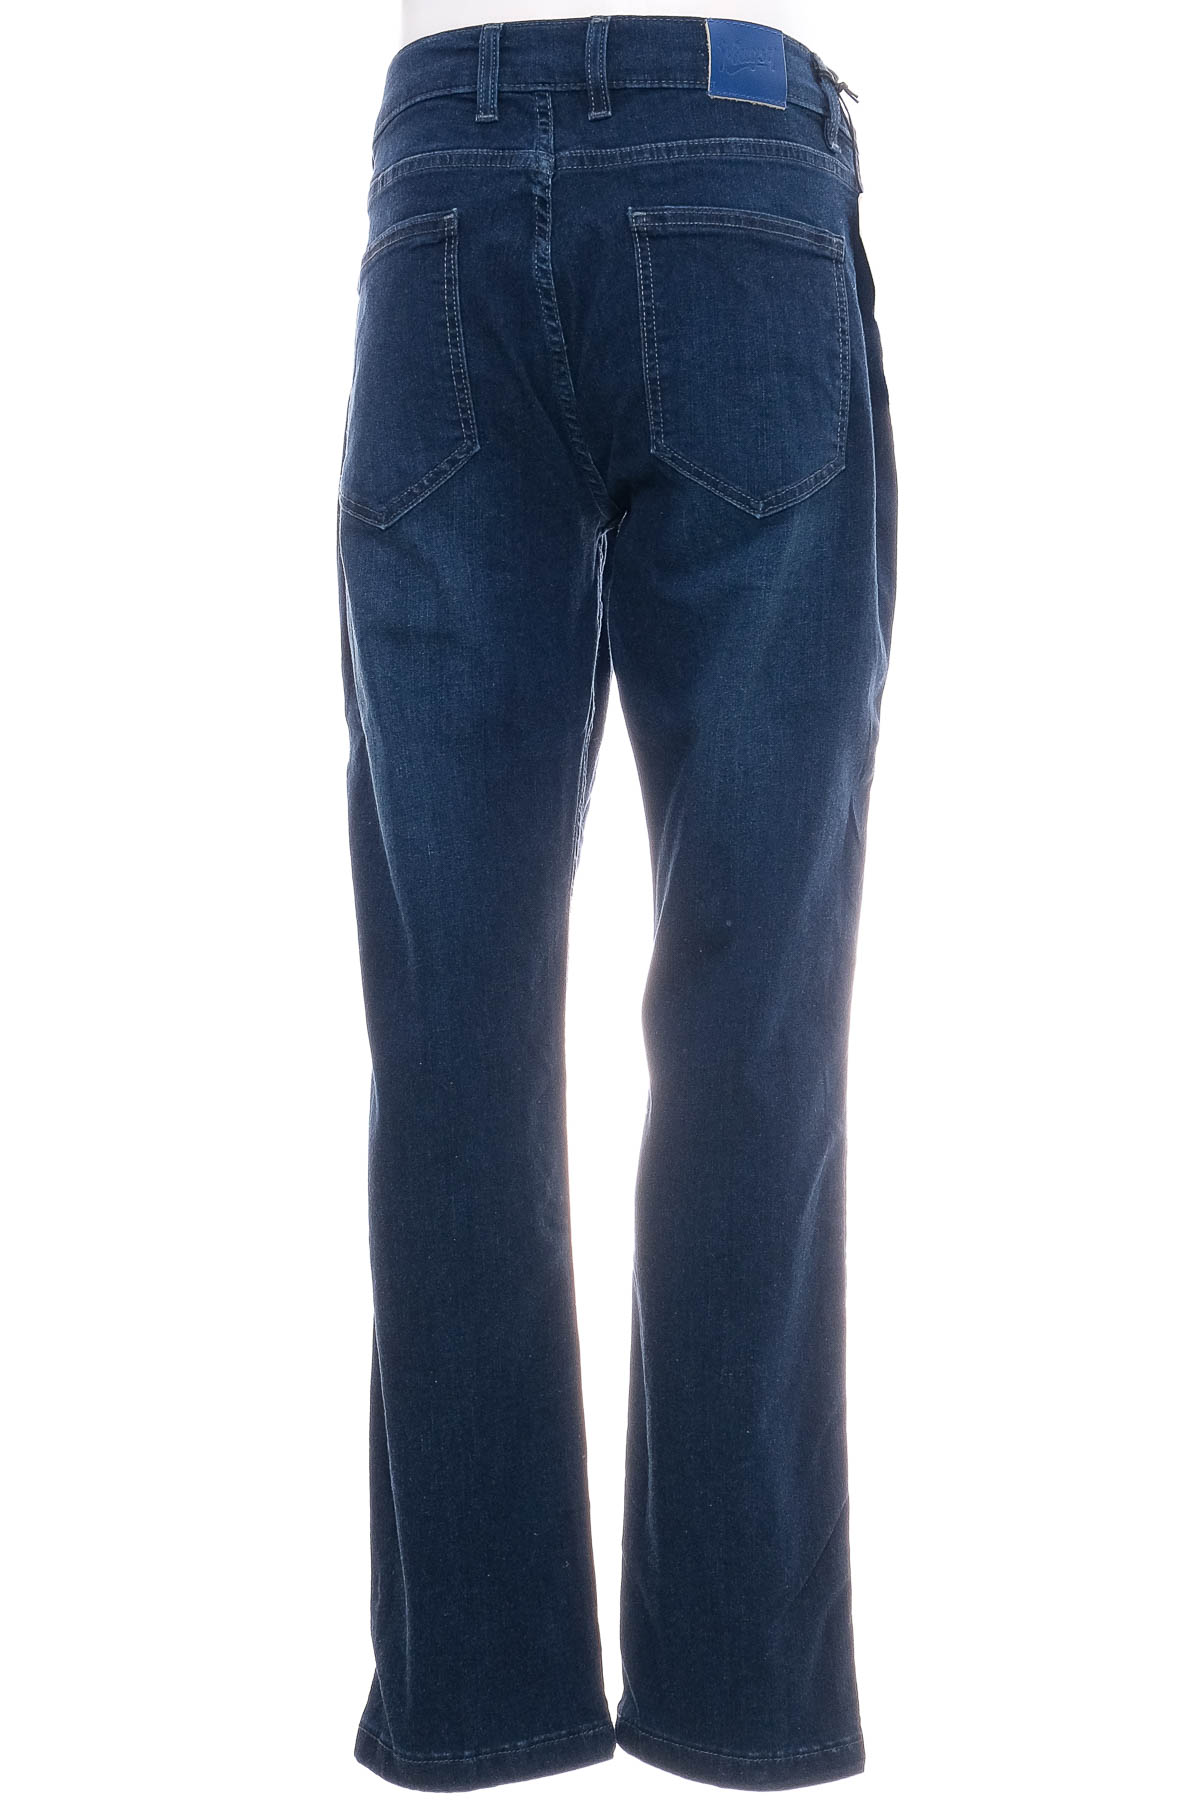 Ανδρικό τζιν - Mugsy Jeans - 1